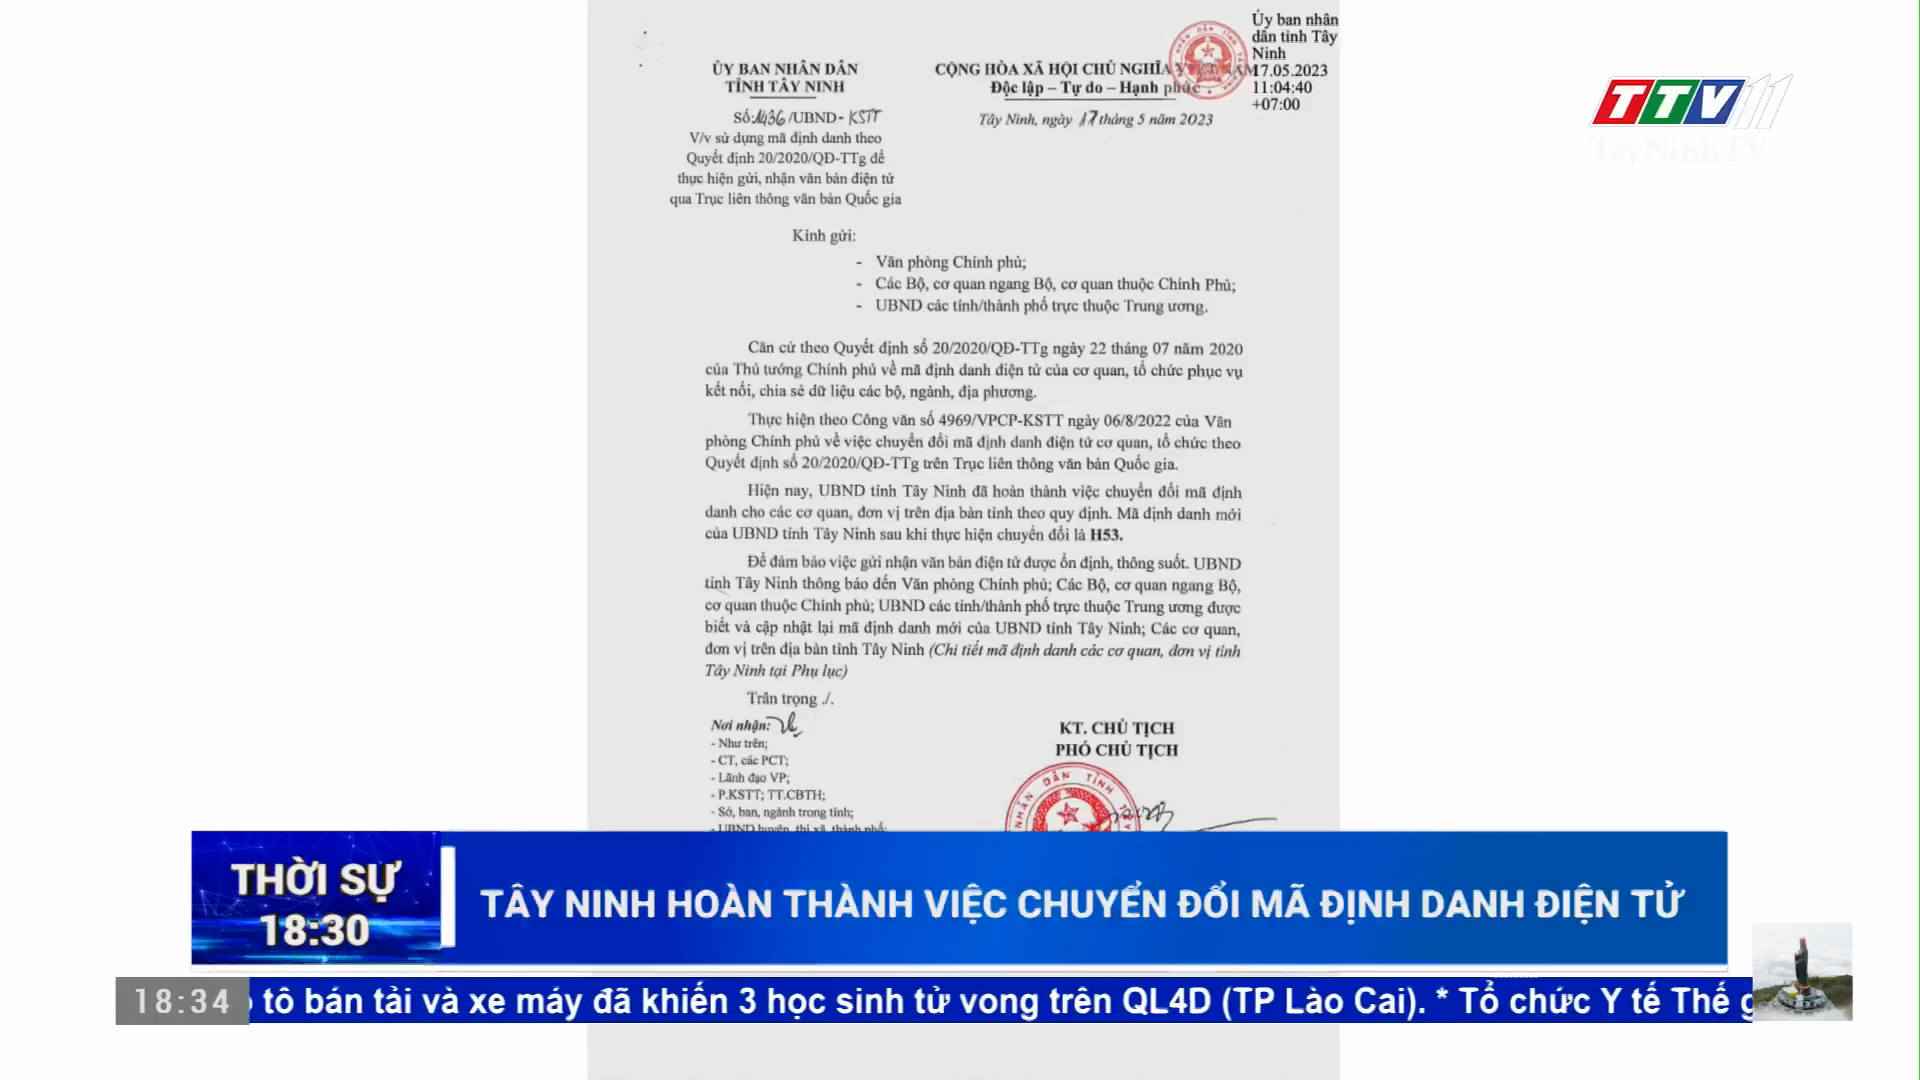 Tây Ninh hoàn thành việc chuyển đổi mã định danh điện tử | TayNinhTV